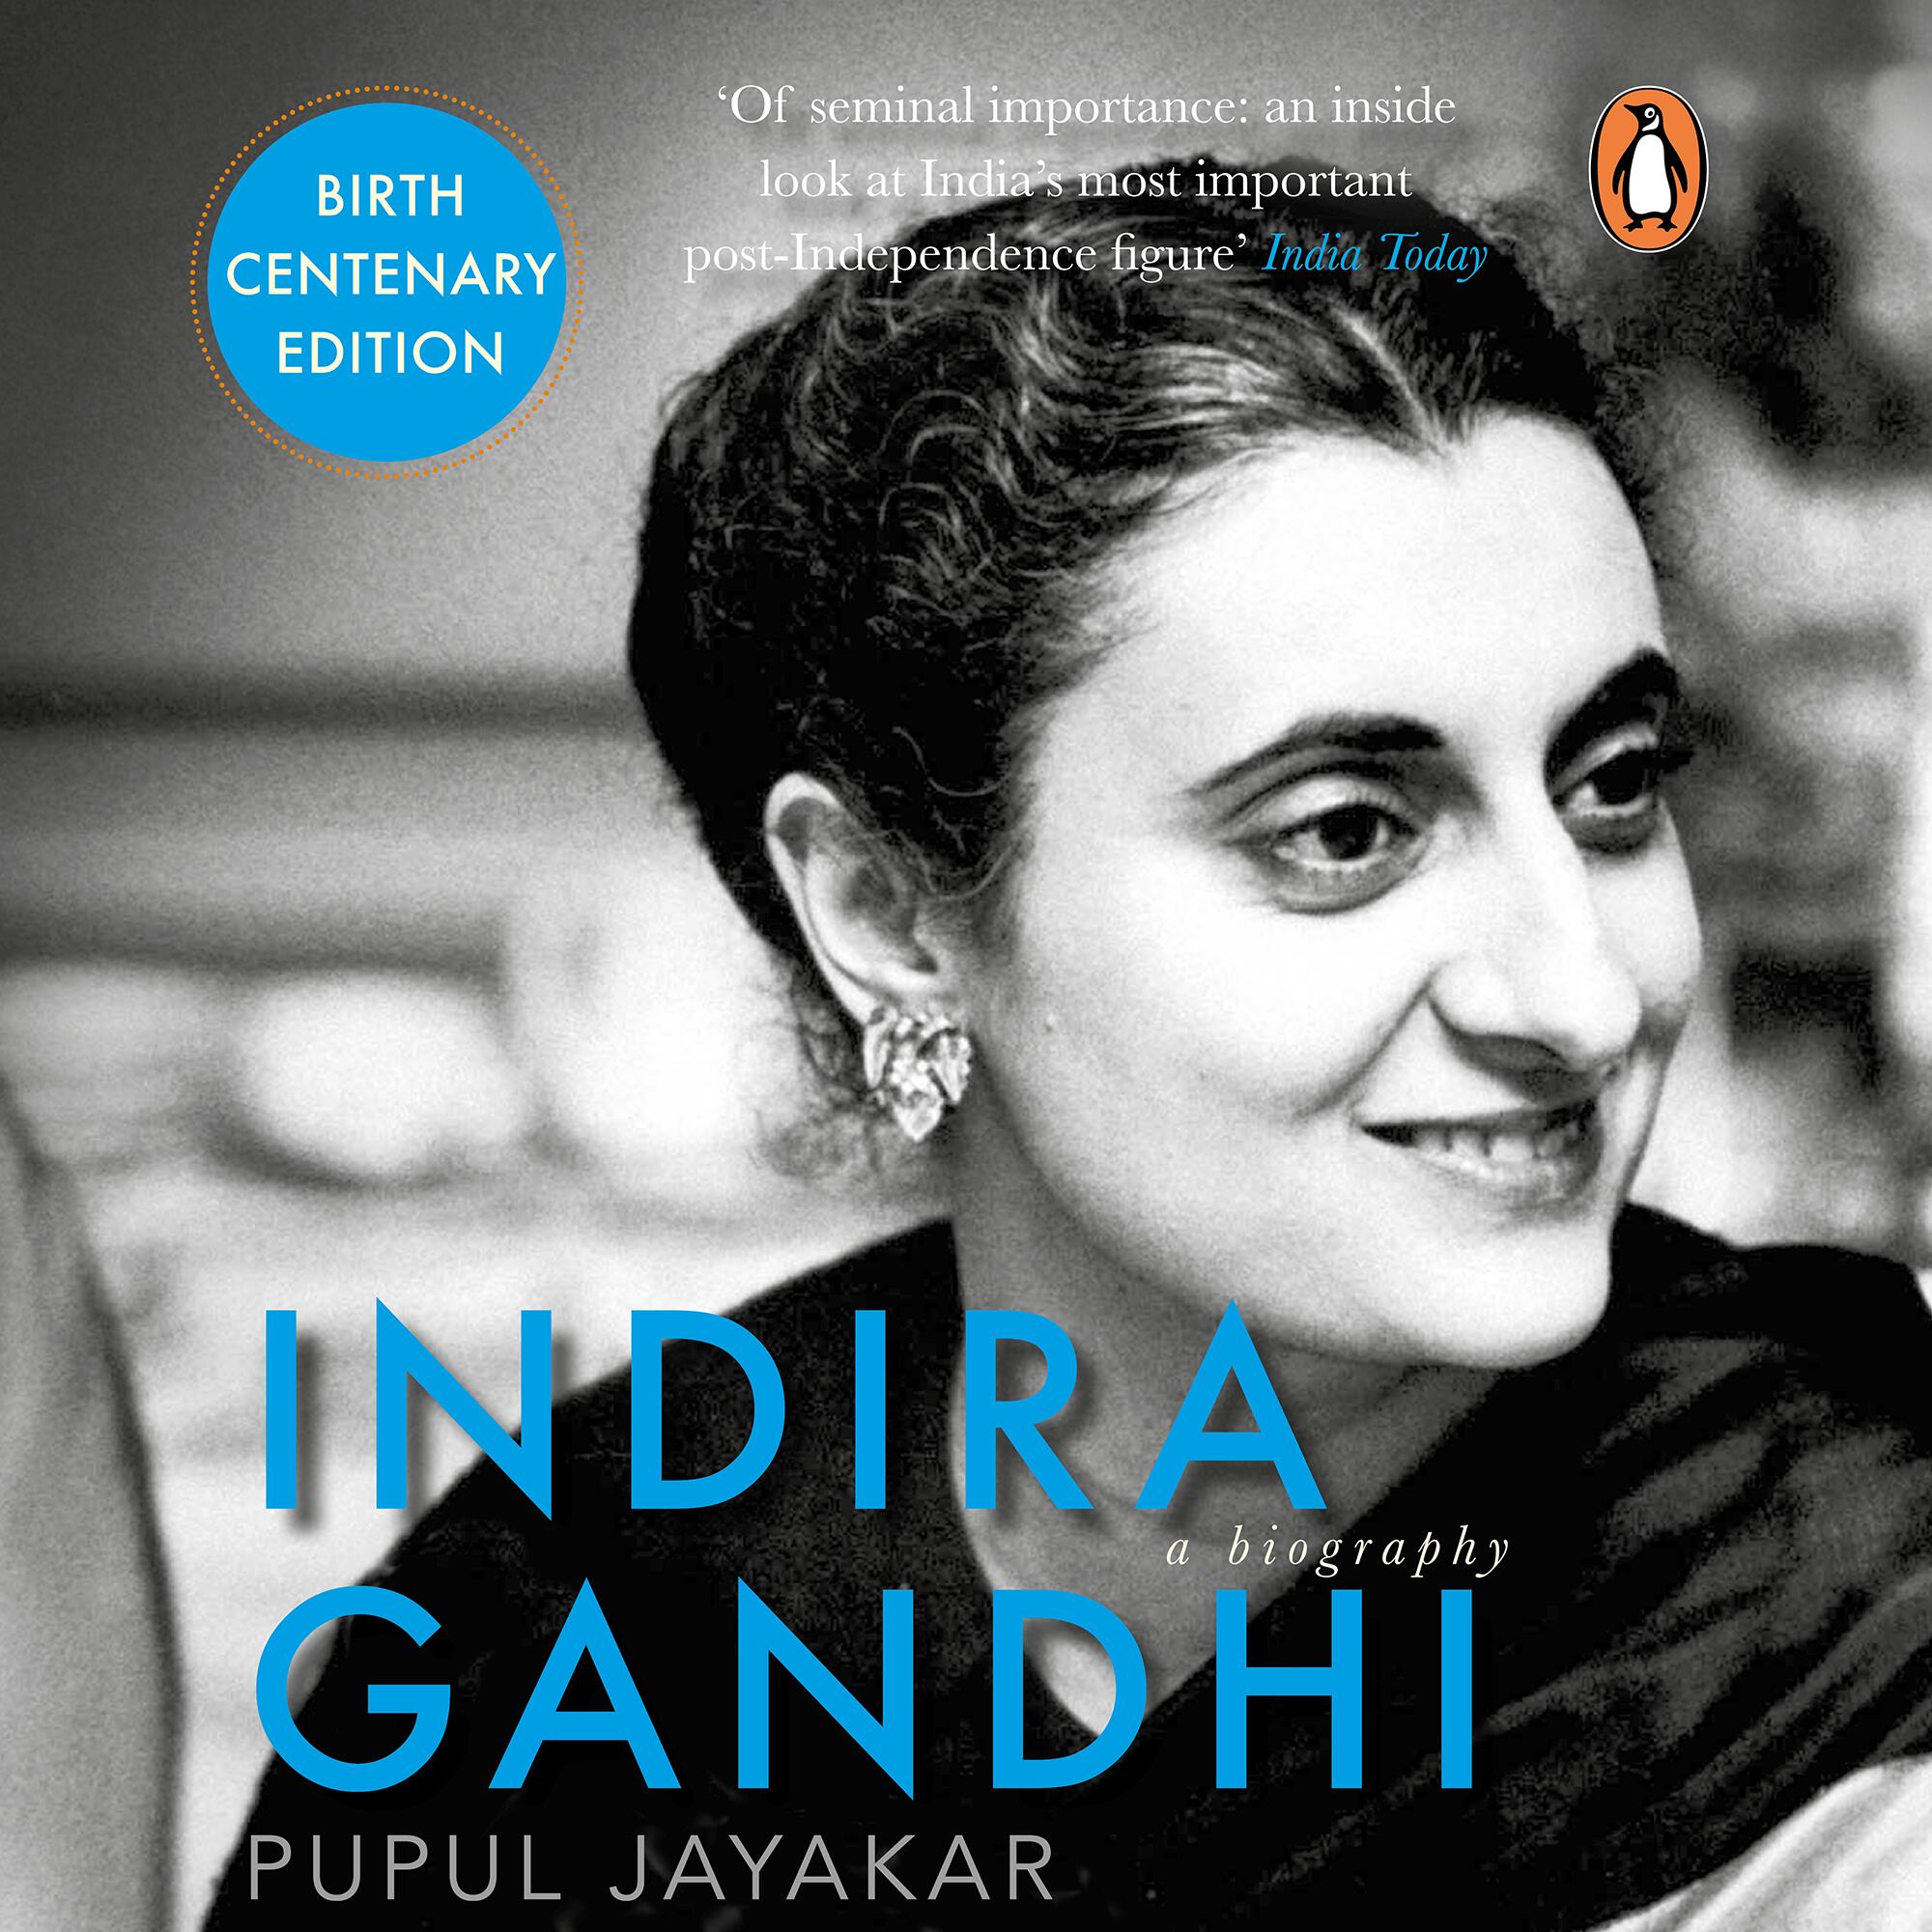 biography of indira gandhi by katherine frank pdf